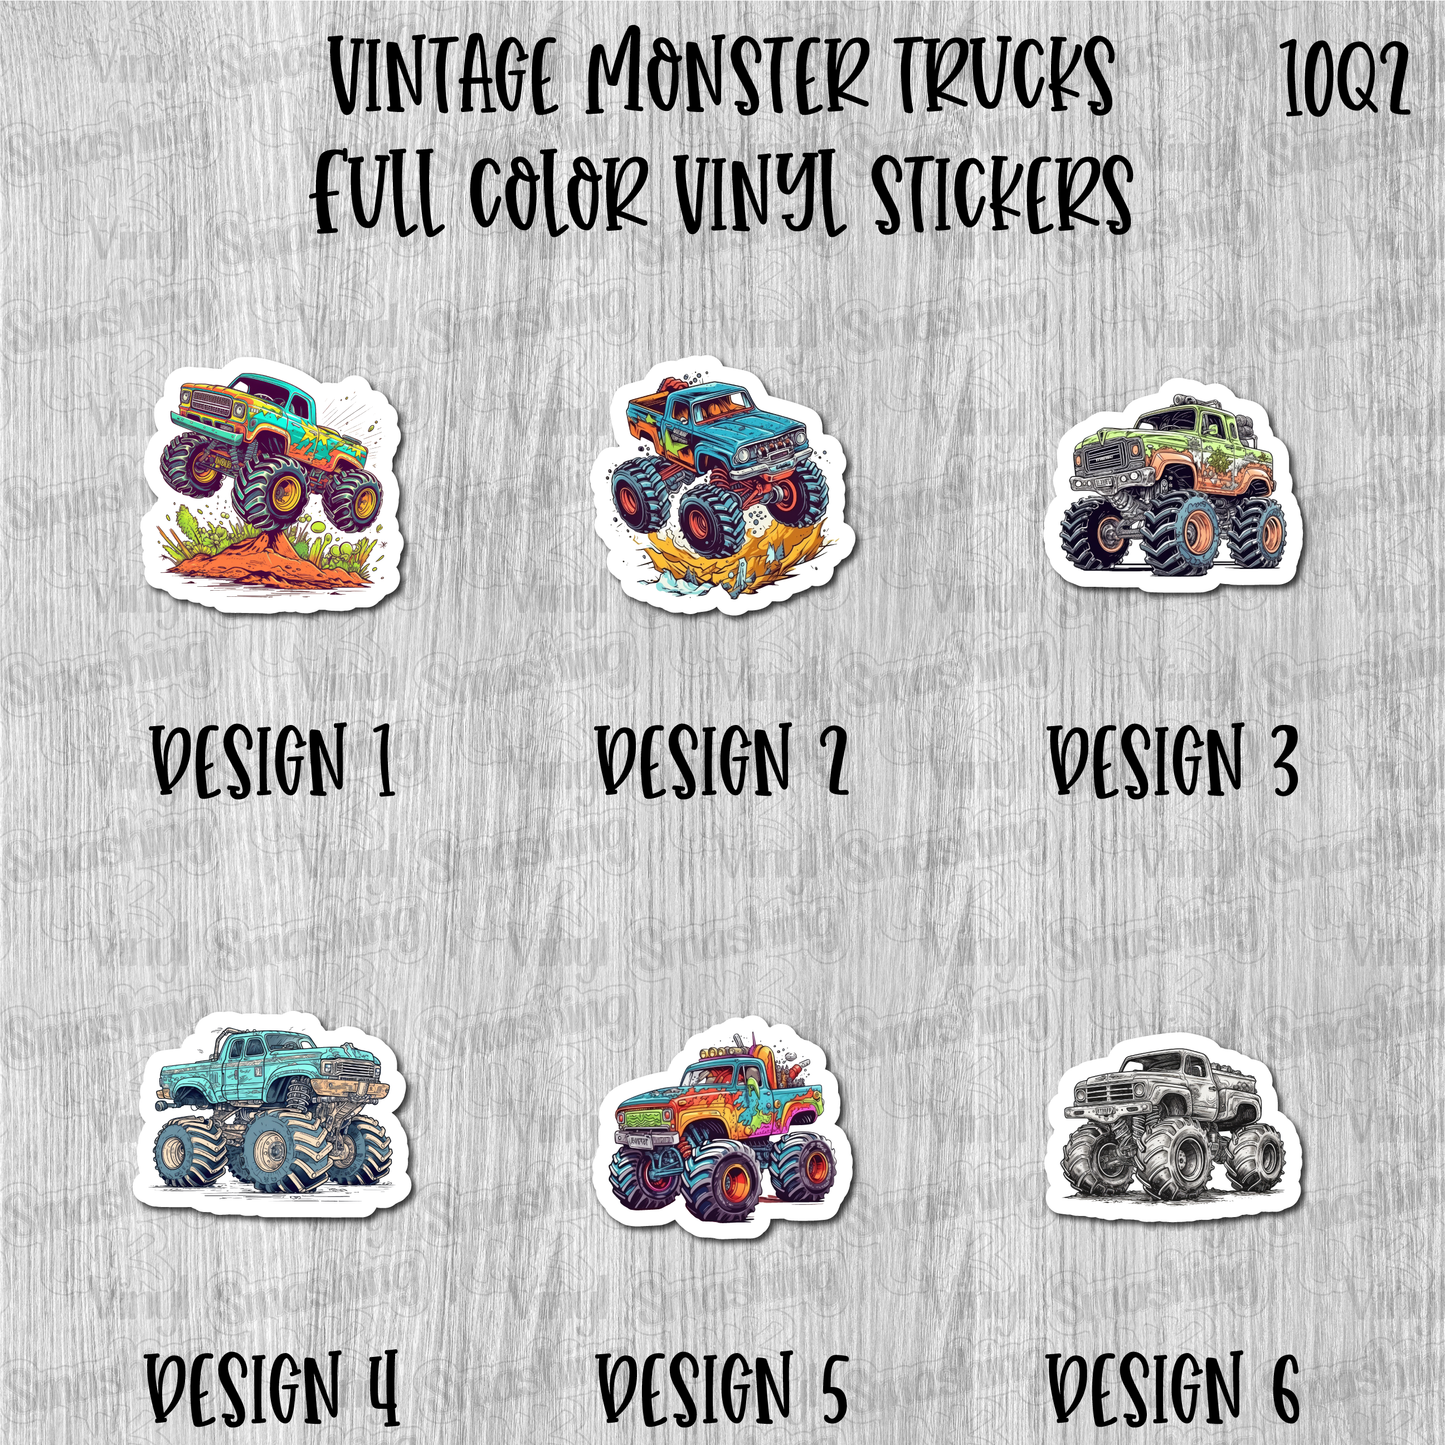 Vintage Monster Trucks - Full Color Vinyl Stickers (SHIPS IN 3-7 BUS DAYS)